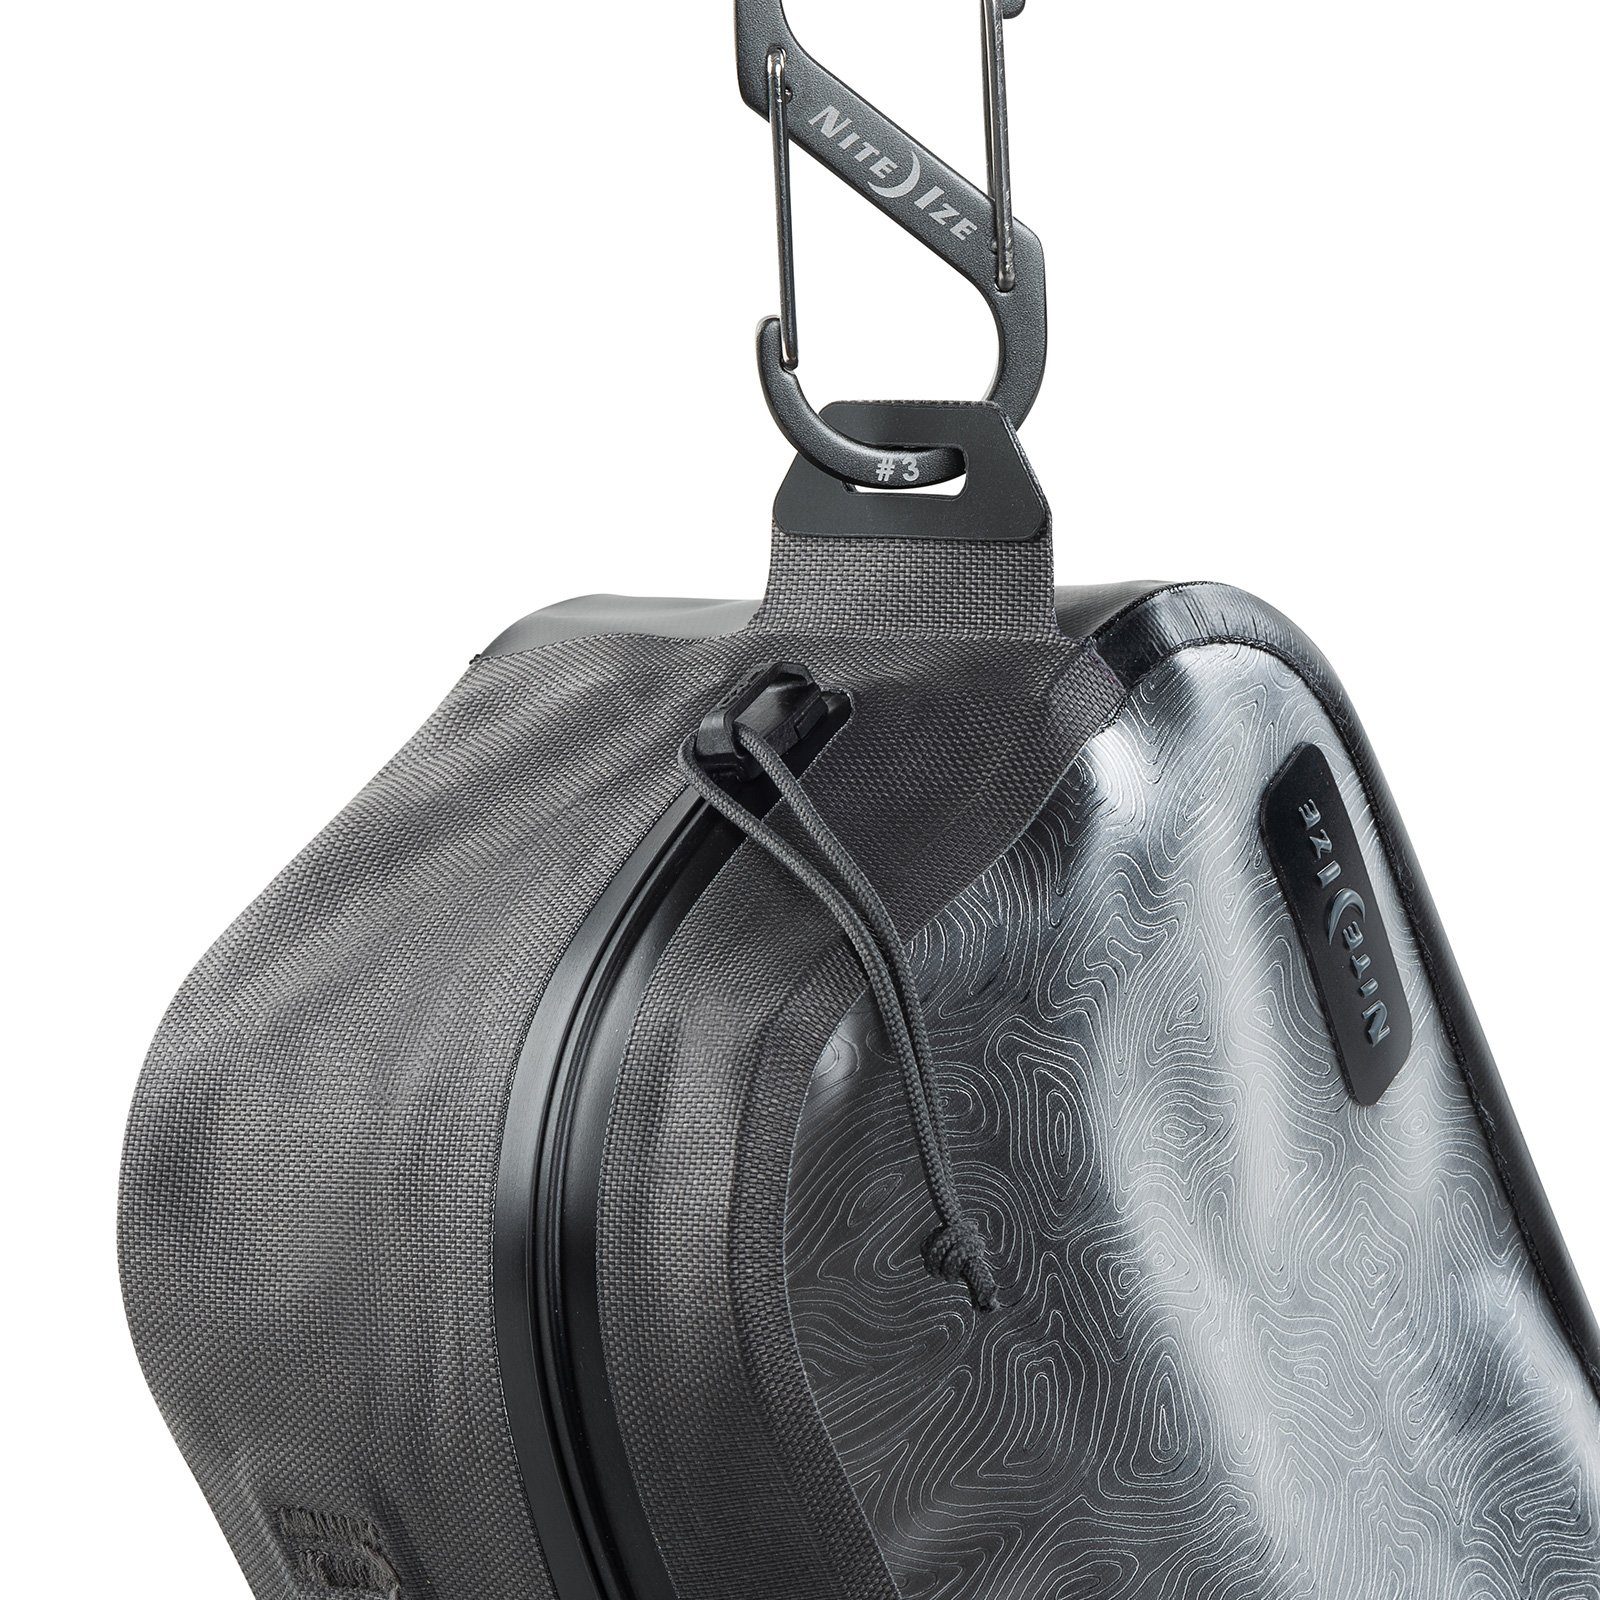 Nite Ize Packsack Tasche Wasserdicht Wasser Pack IP67 Camping RunOff Bag Sport Beutel Dry